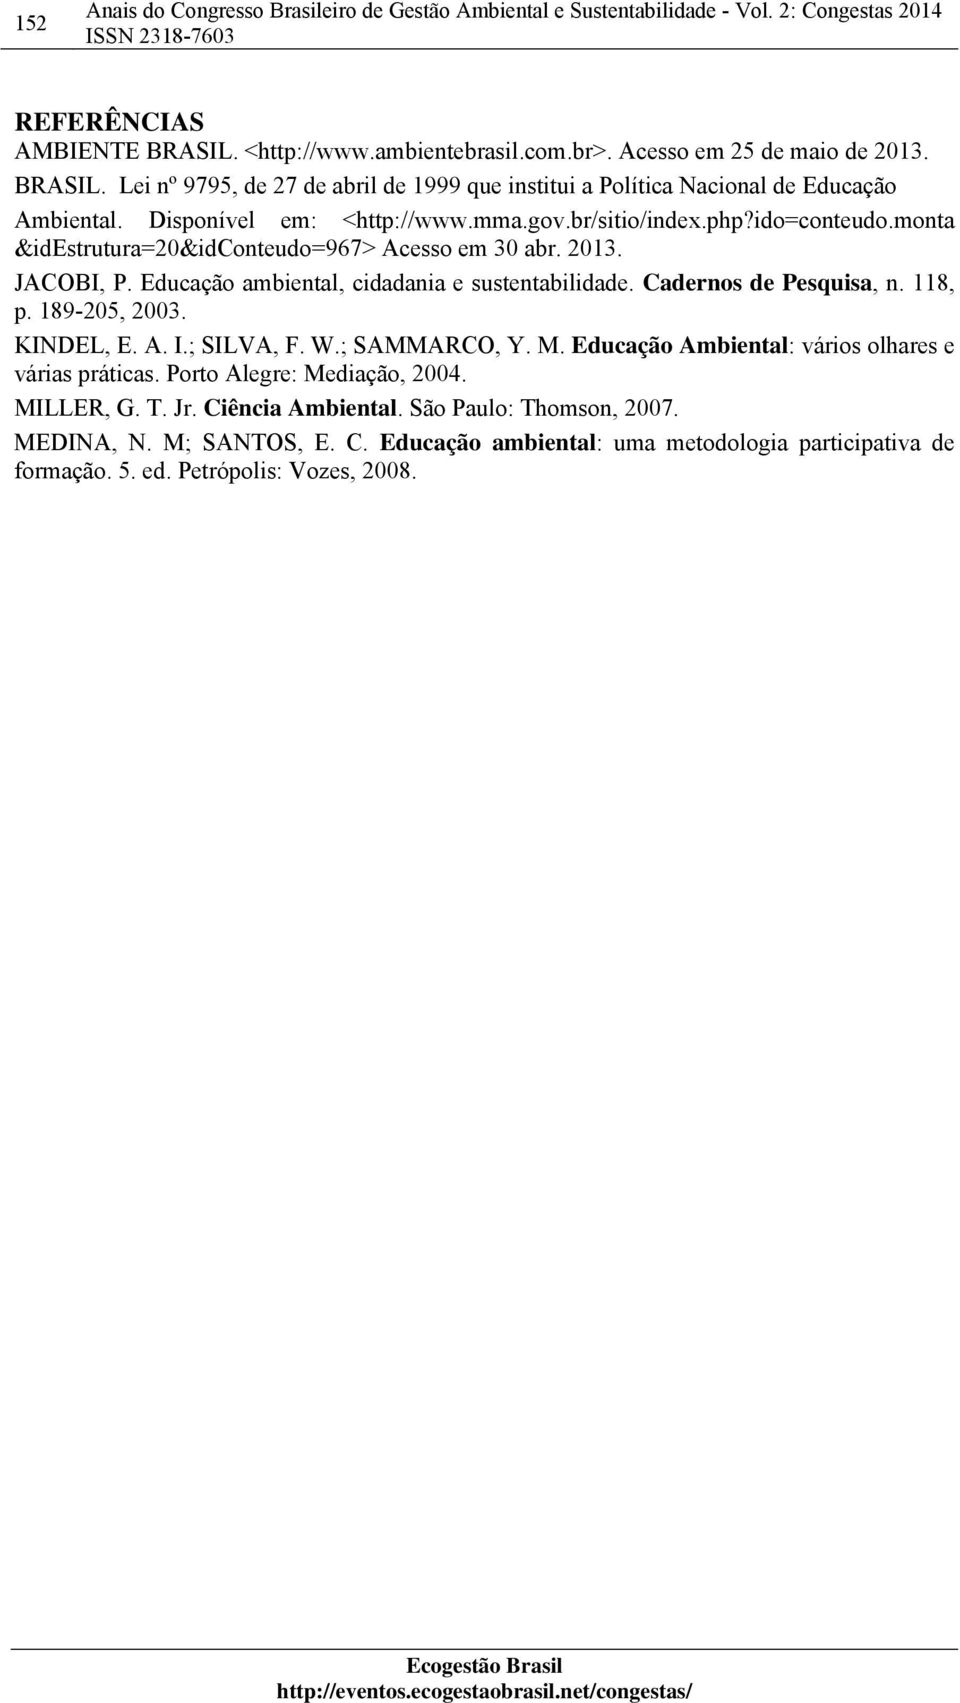 Cadernos de Pesquisa, n. 118, p. 189-205, 2003. KINDEL, E. A. I.; SILVA, F. W.; SAMMARCO, Y. M. Educação Ambiental: vários olhares e várias práticas. Porto Alegre: Mediação, 2004.